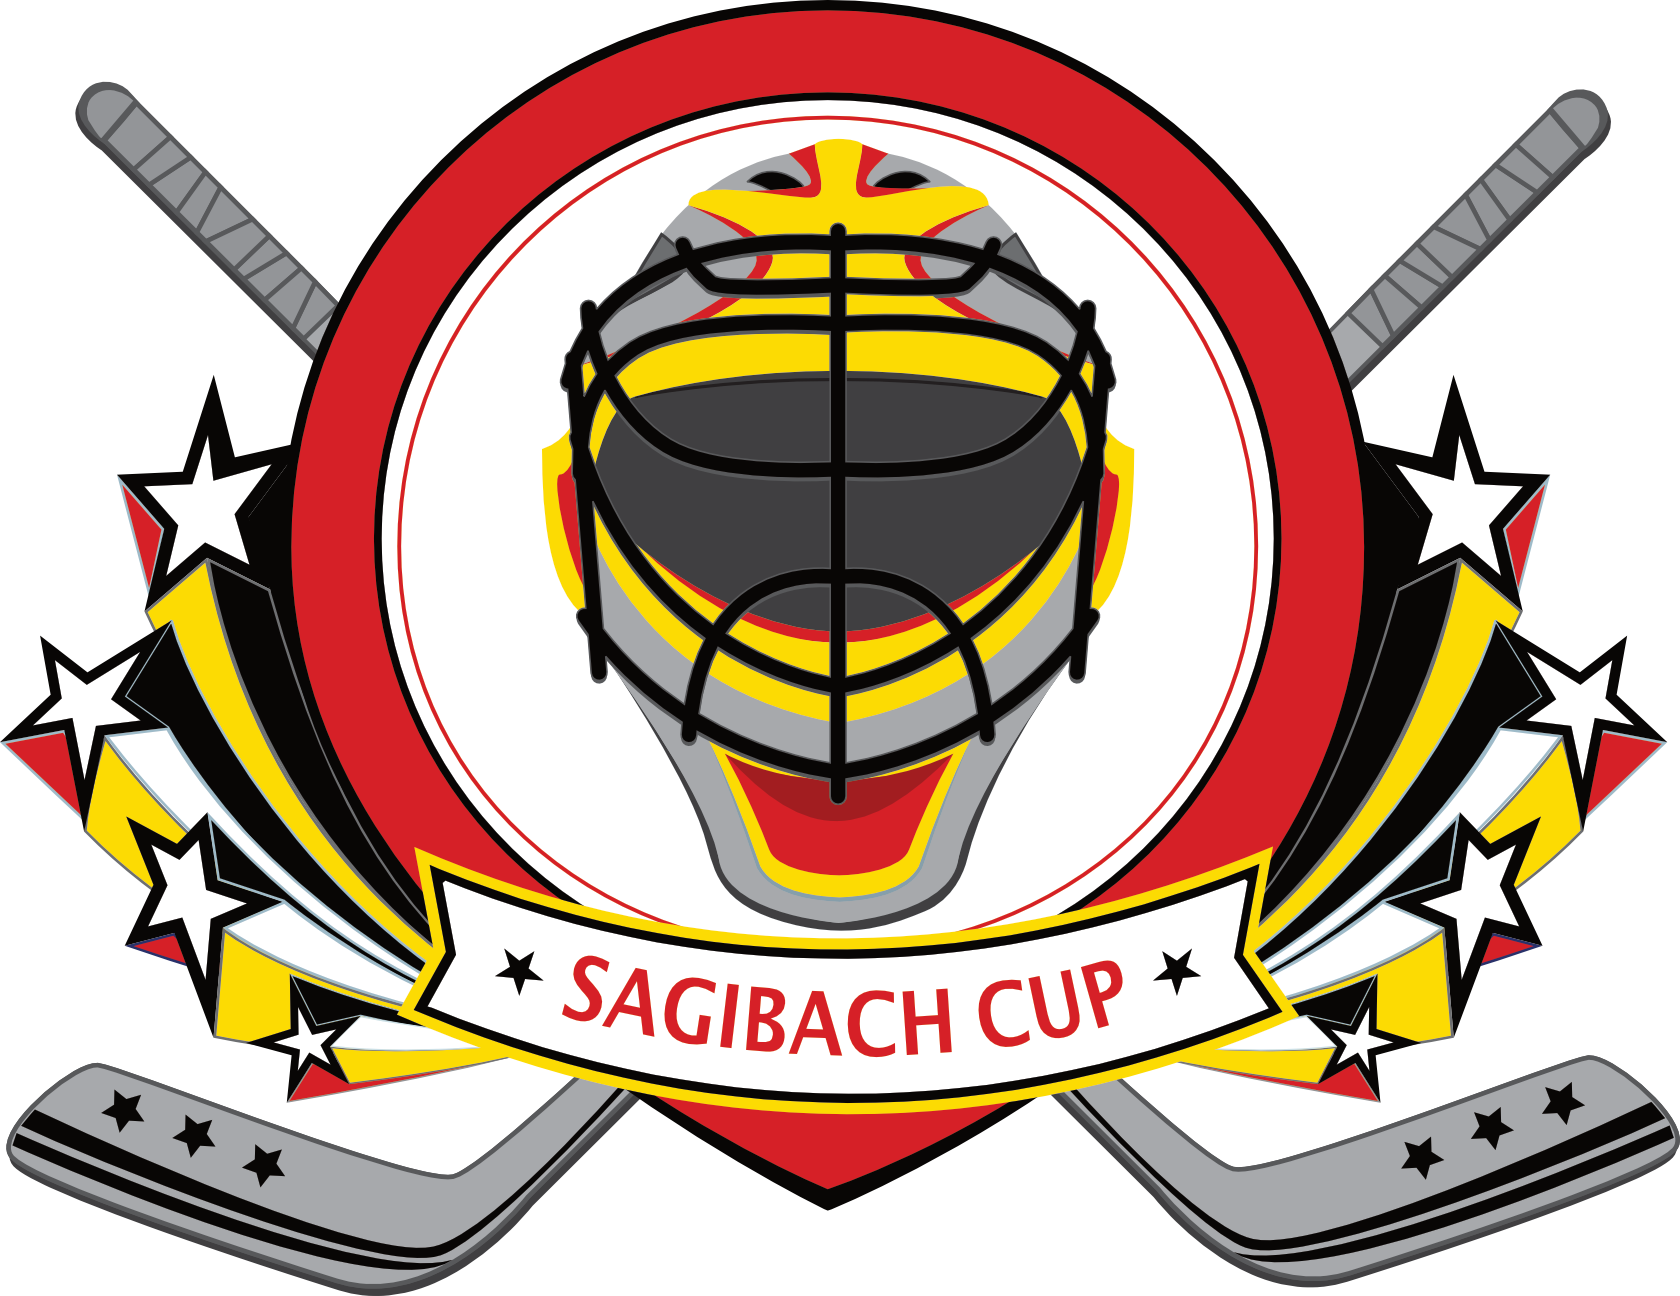 Sagibach Cup